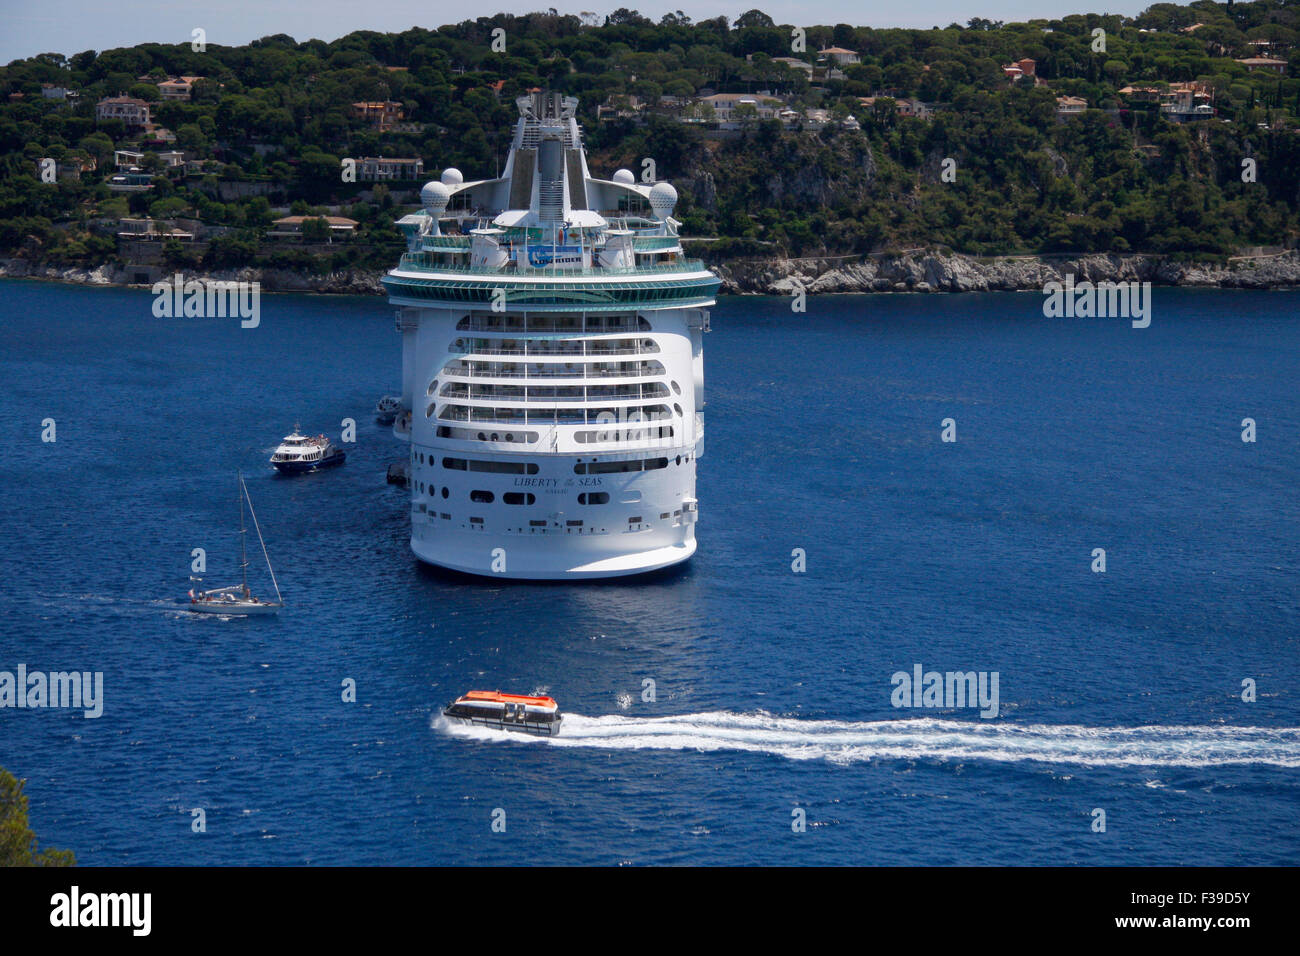 Kreuzfahrtschiff auf dem Mittelmeer, Villefranche sur Mer, Cote d'Azur, Frankreich. Stock Photo